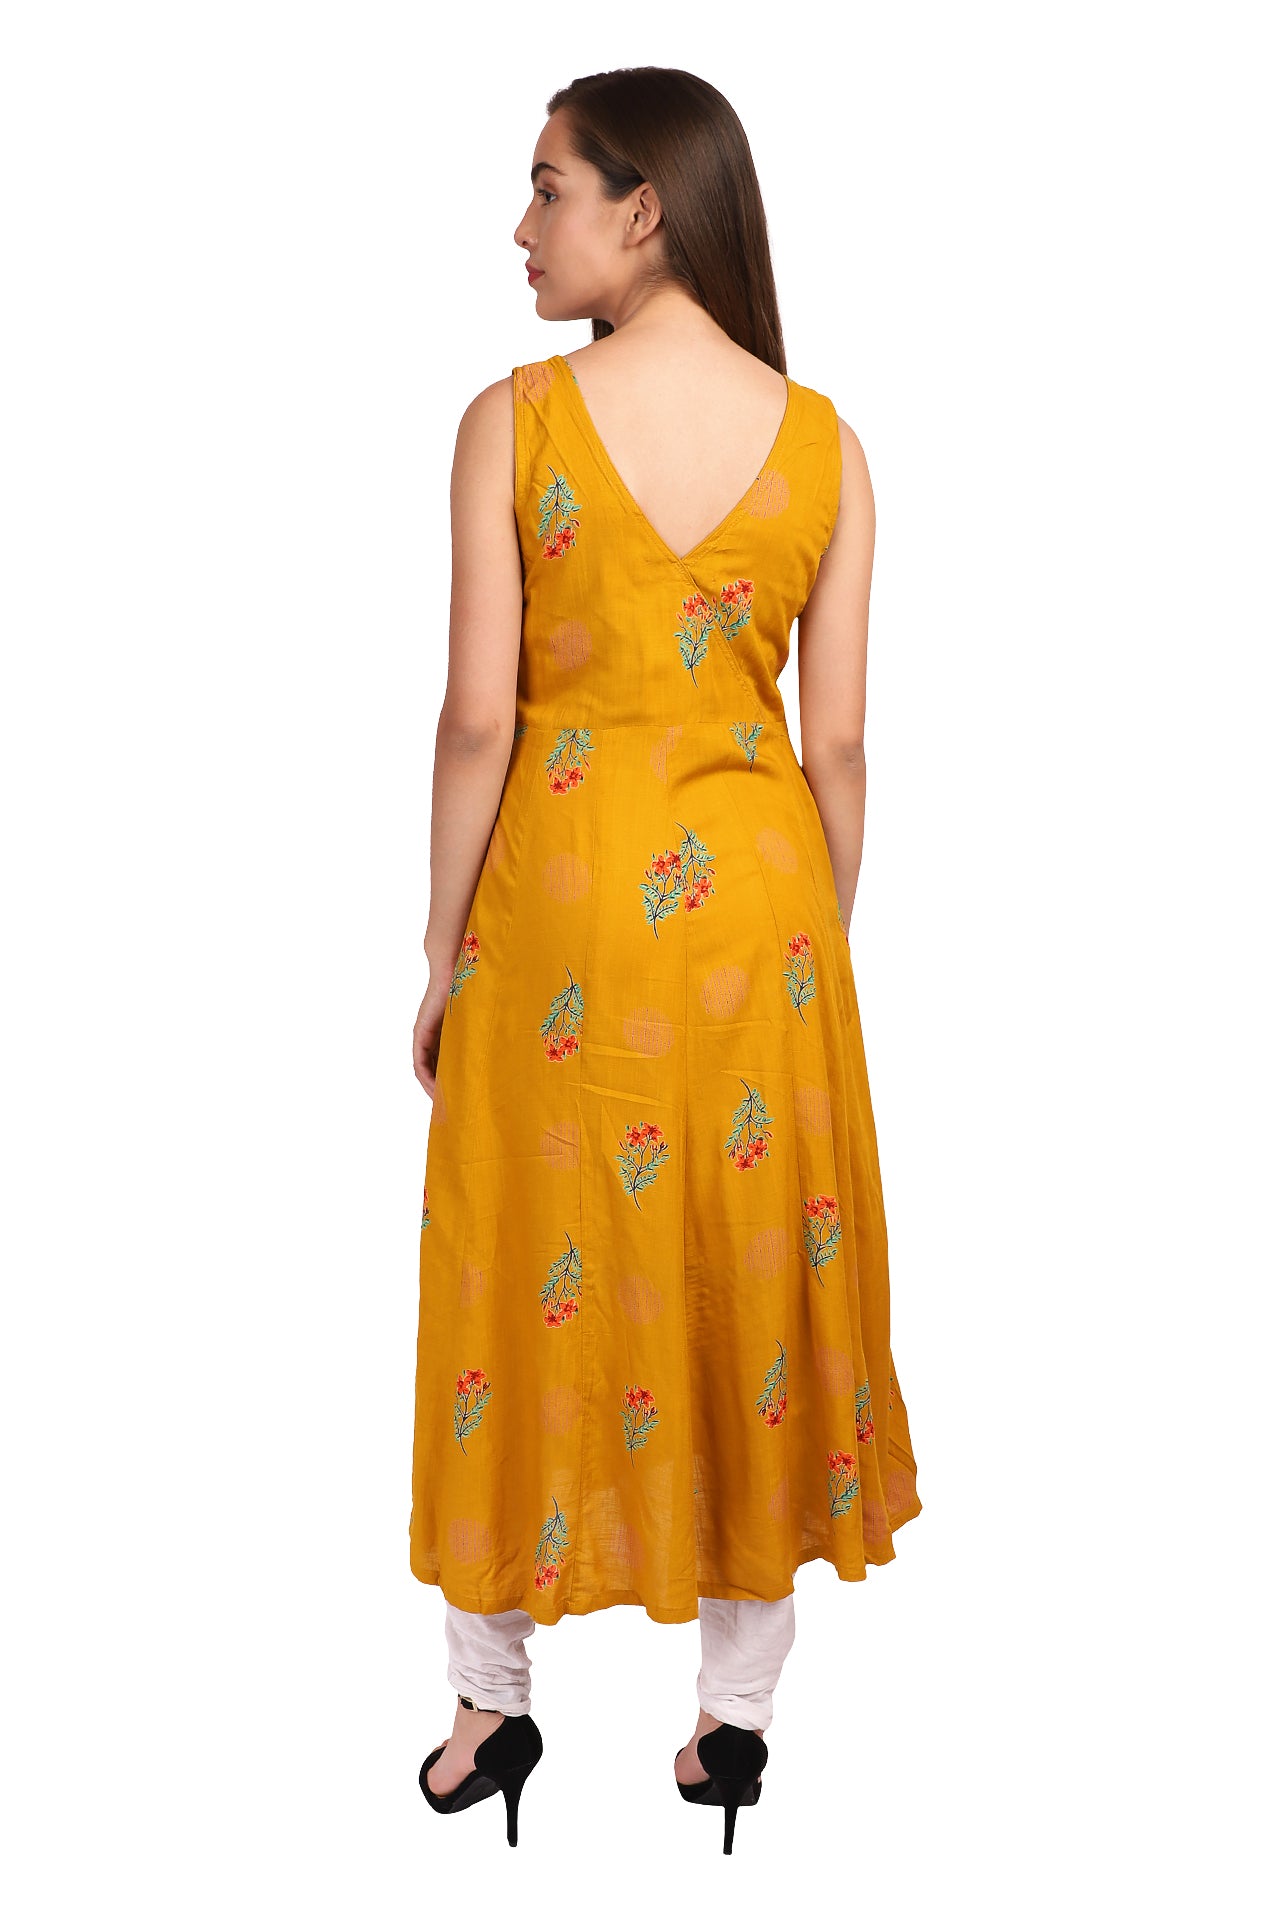 Amodini yellow printed rayon dress